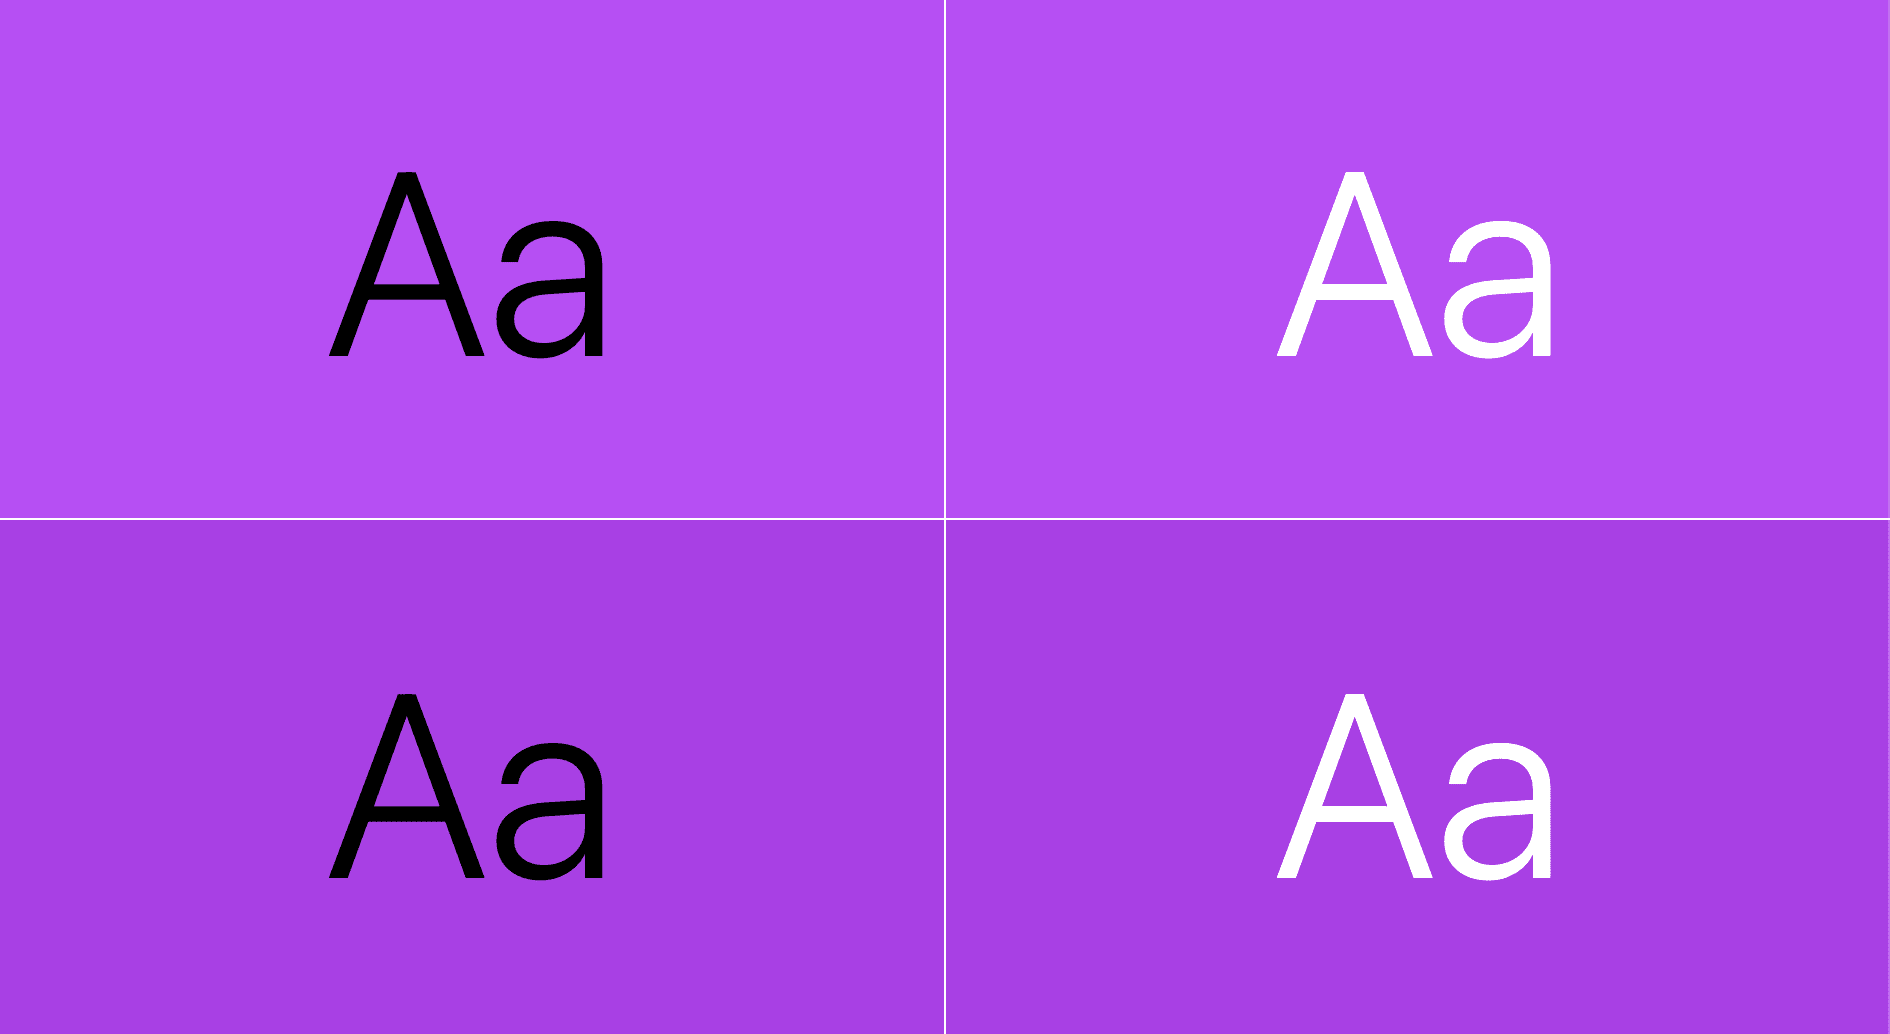 文字以紫色顯示：其中一組文字是紫色，上方是紫色，另一個是紫色的白色文字。